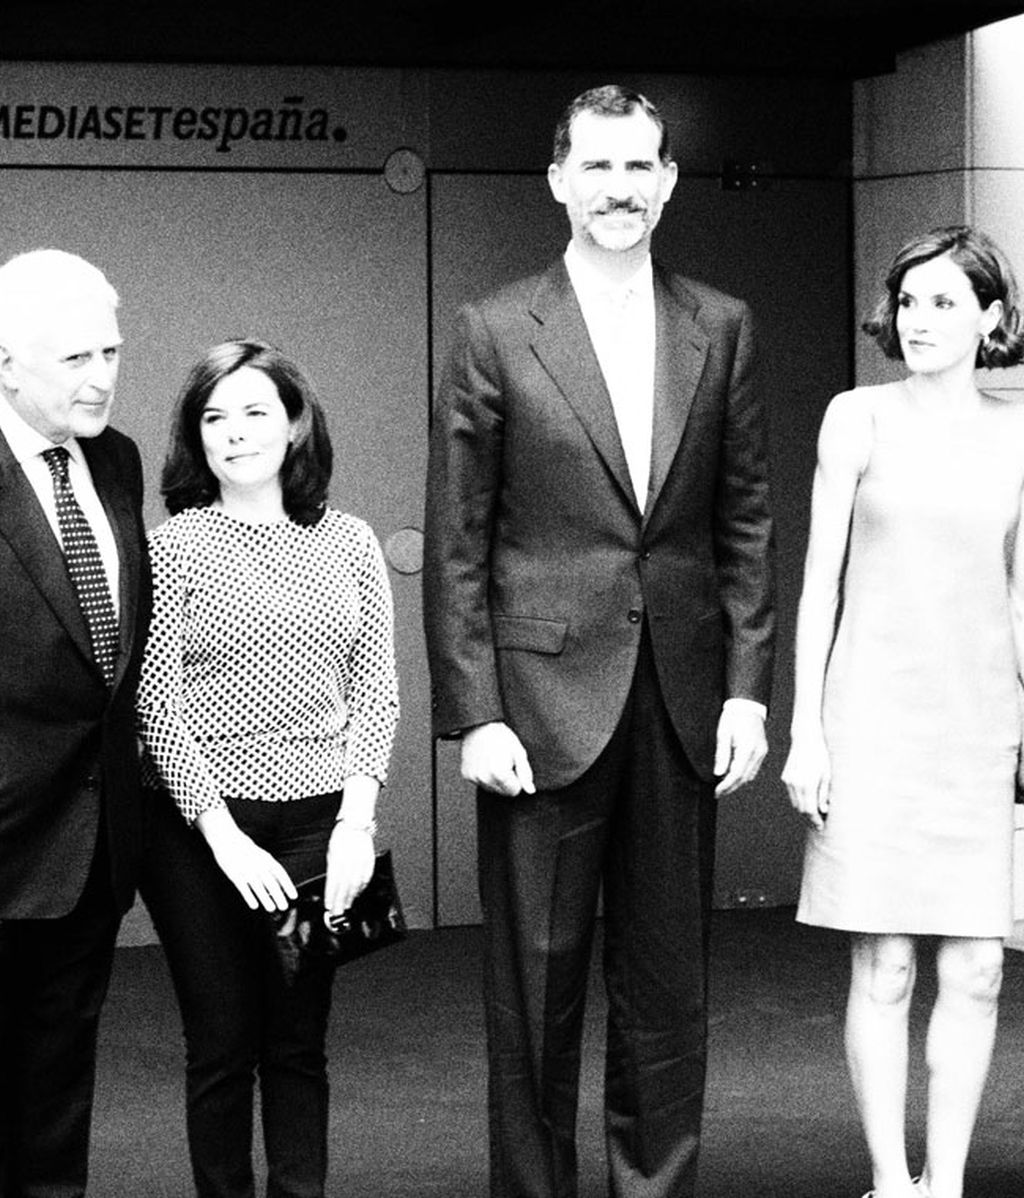 Divi-visita en blanco y negro: La intrahistoria de Letizia y Felipe en Mediaset, foto a foto